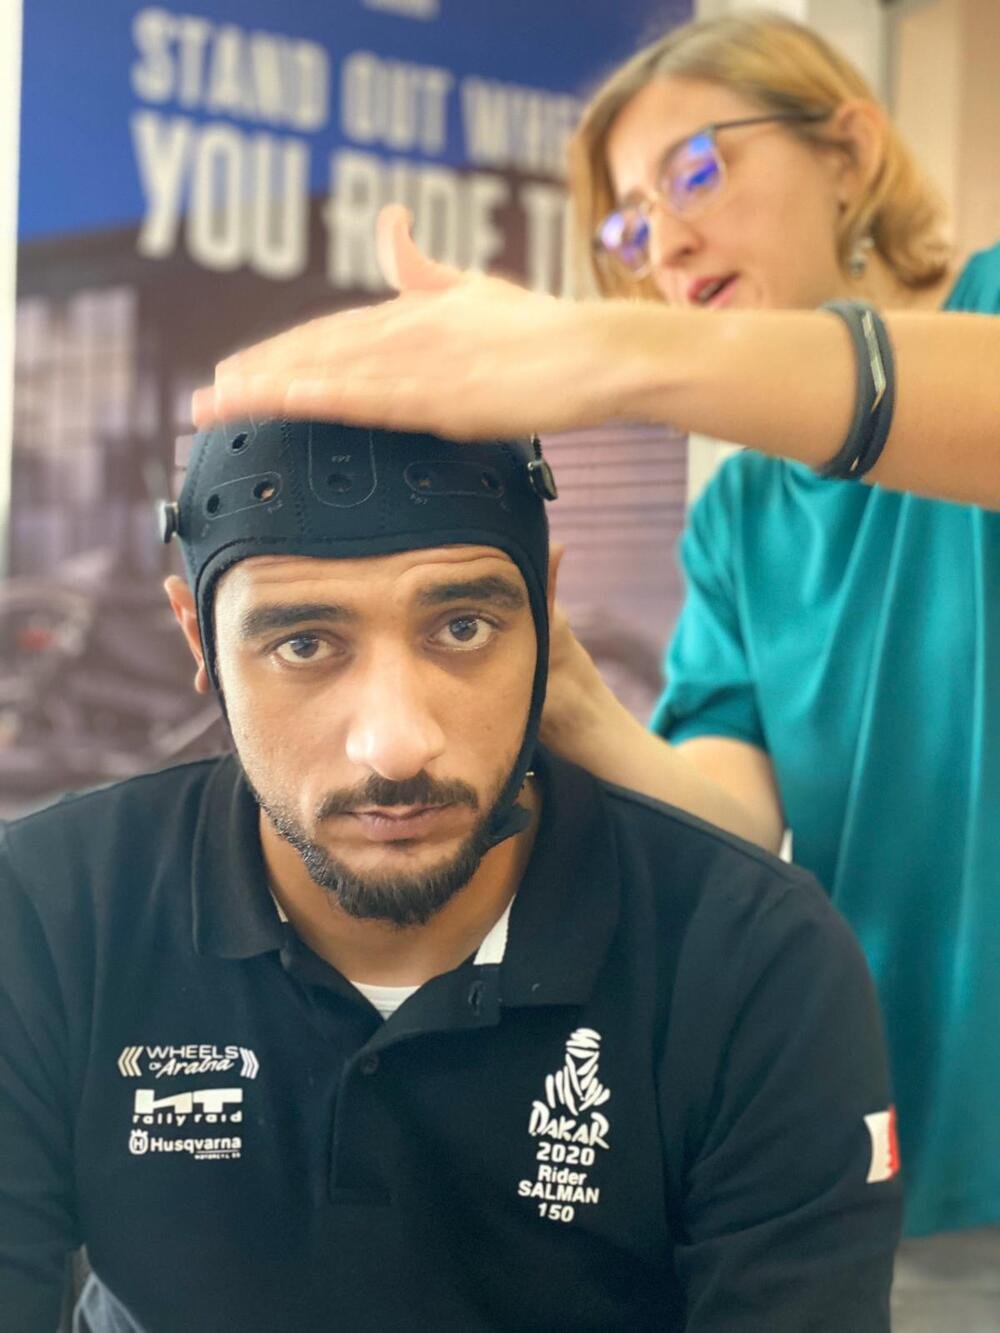 Mohamed Salman con lo speciale casco in testa